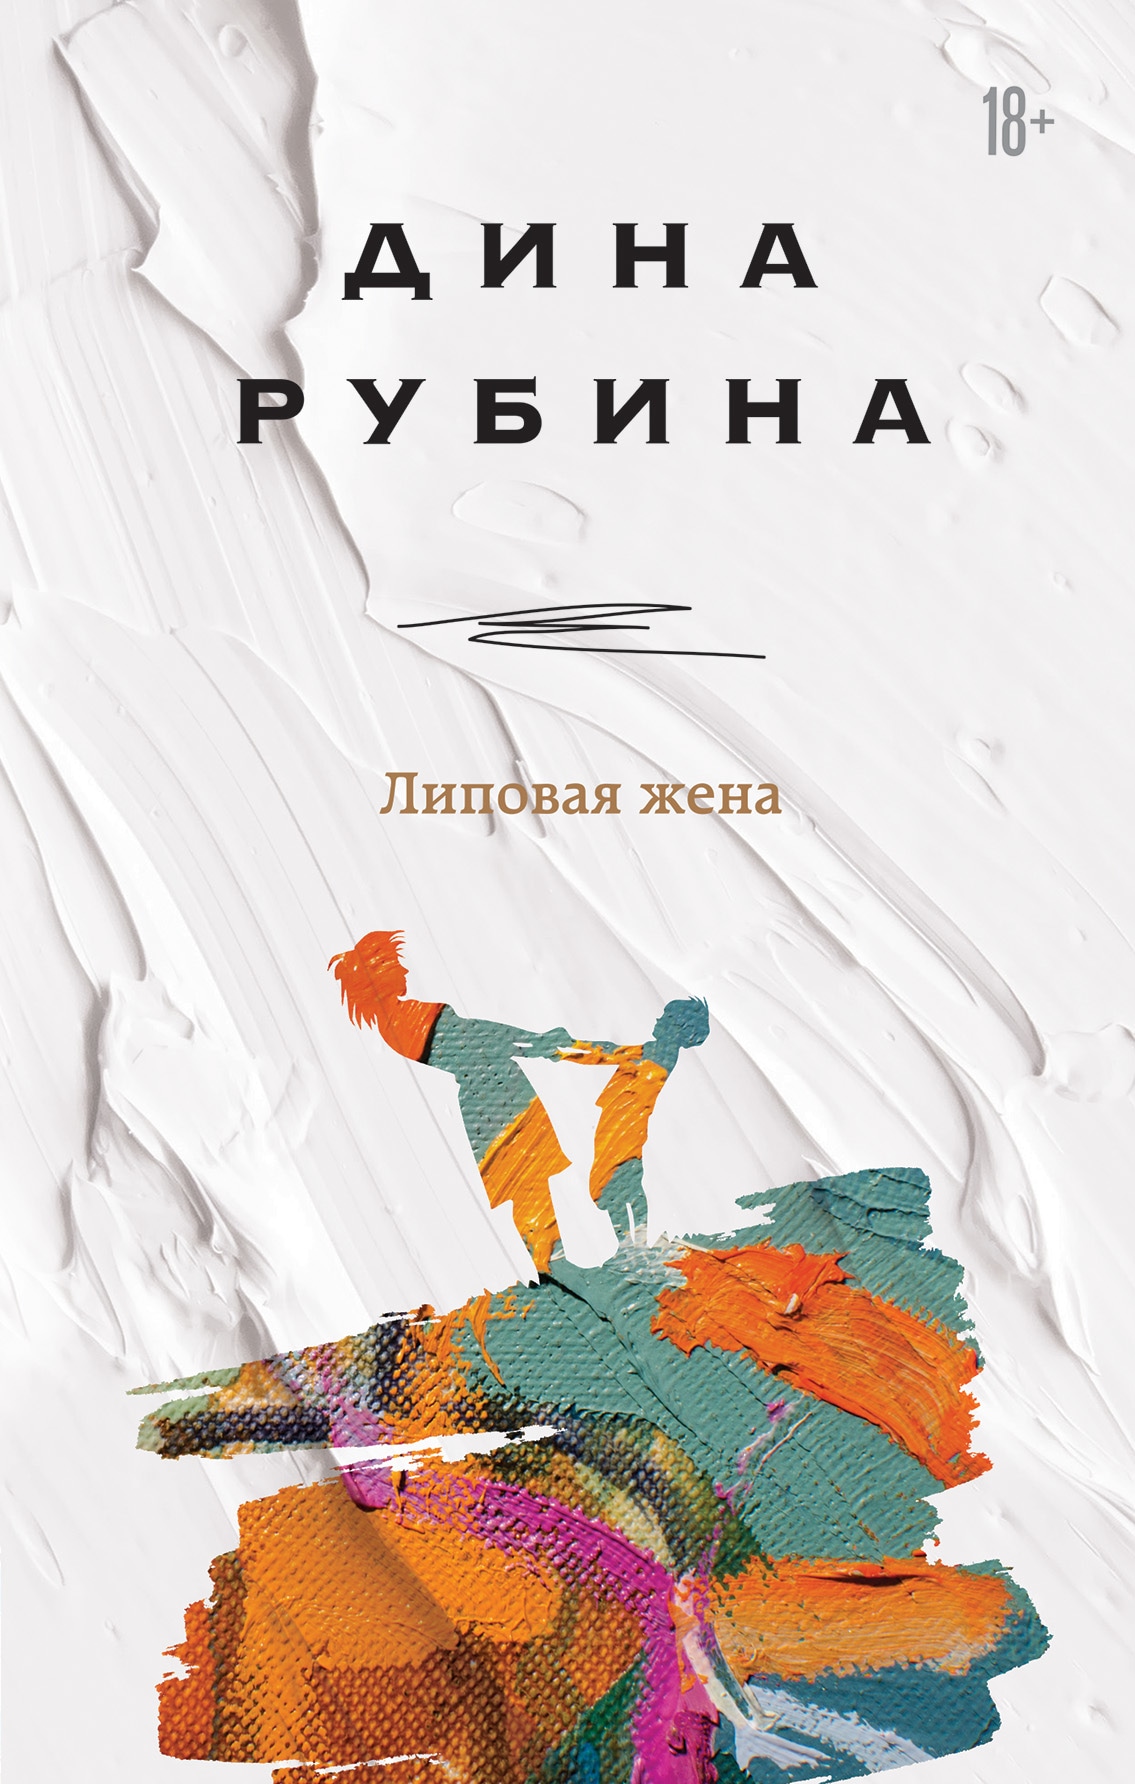 Book “Липовая жена” by Дина Рубина — June 15, 2021